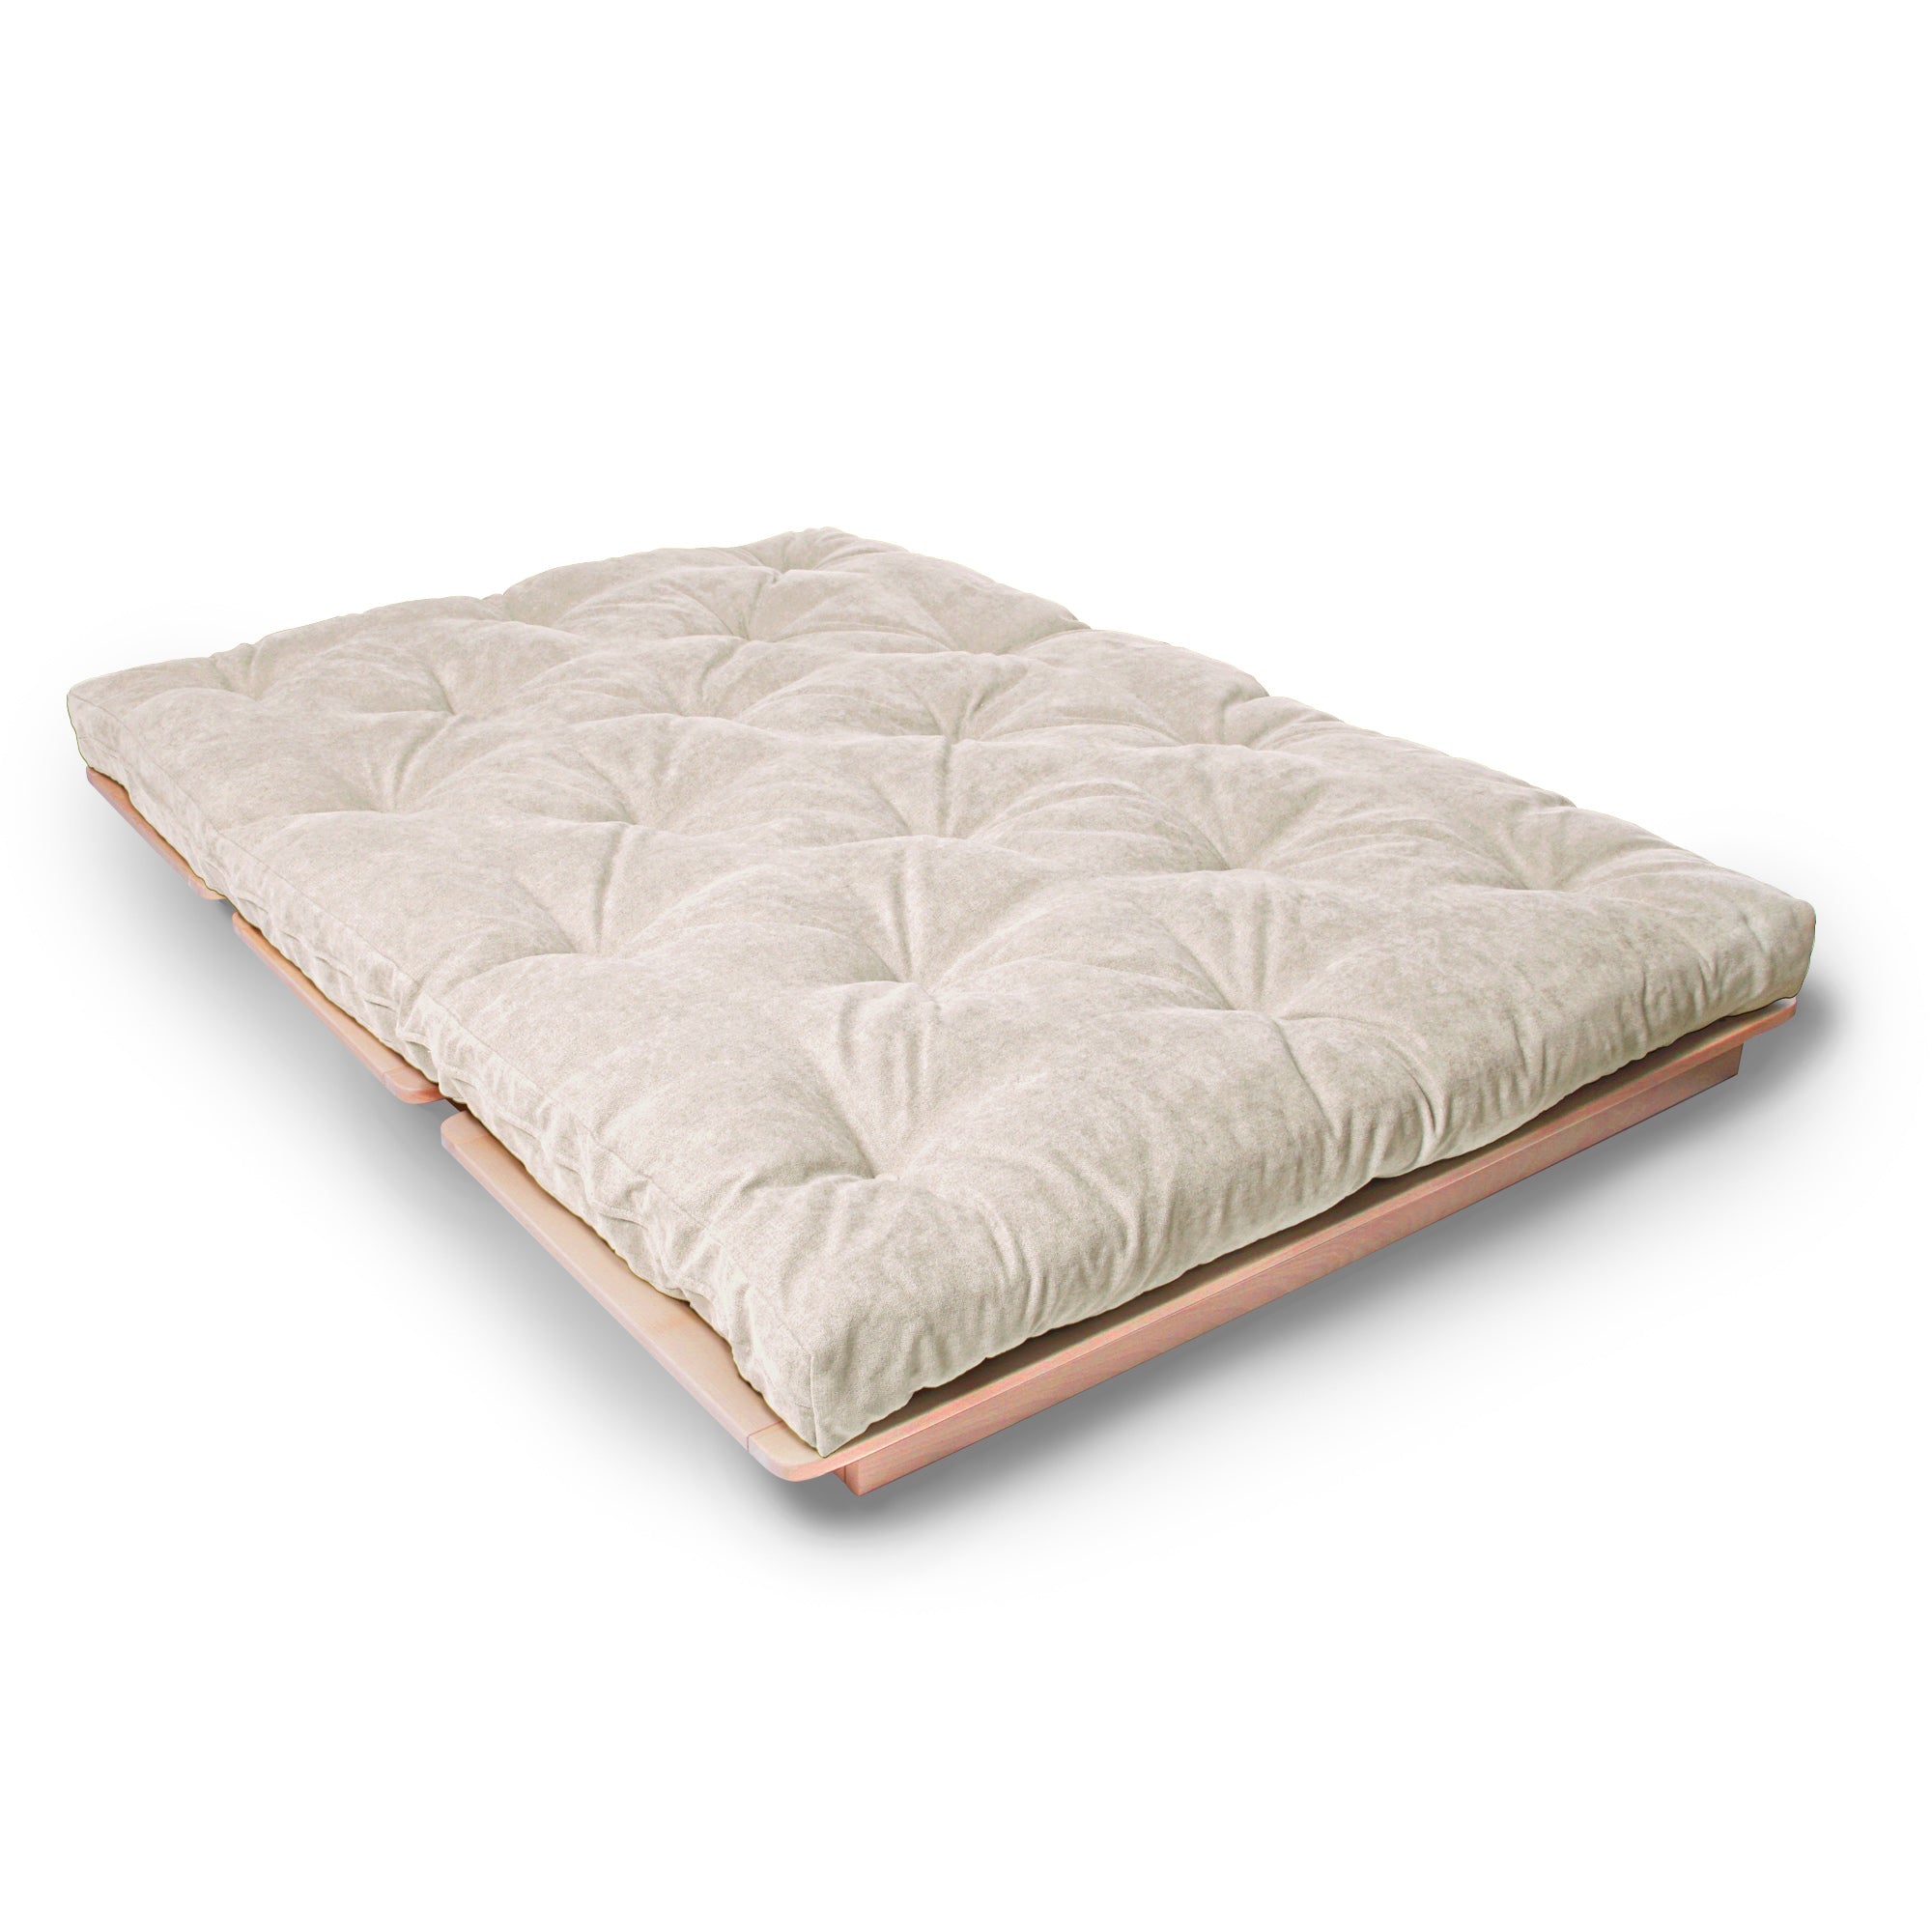 LAYTI-140 Sedia futon, legno di faggio, colore naturale